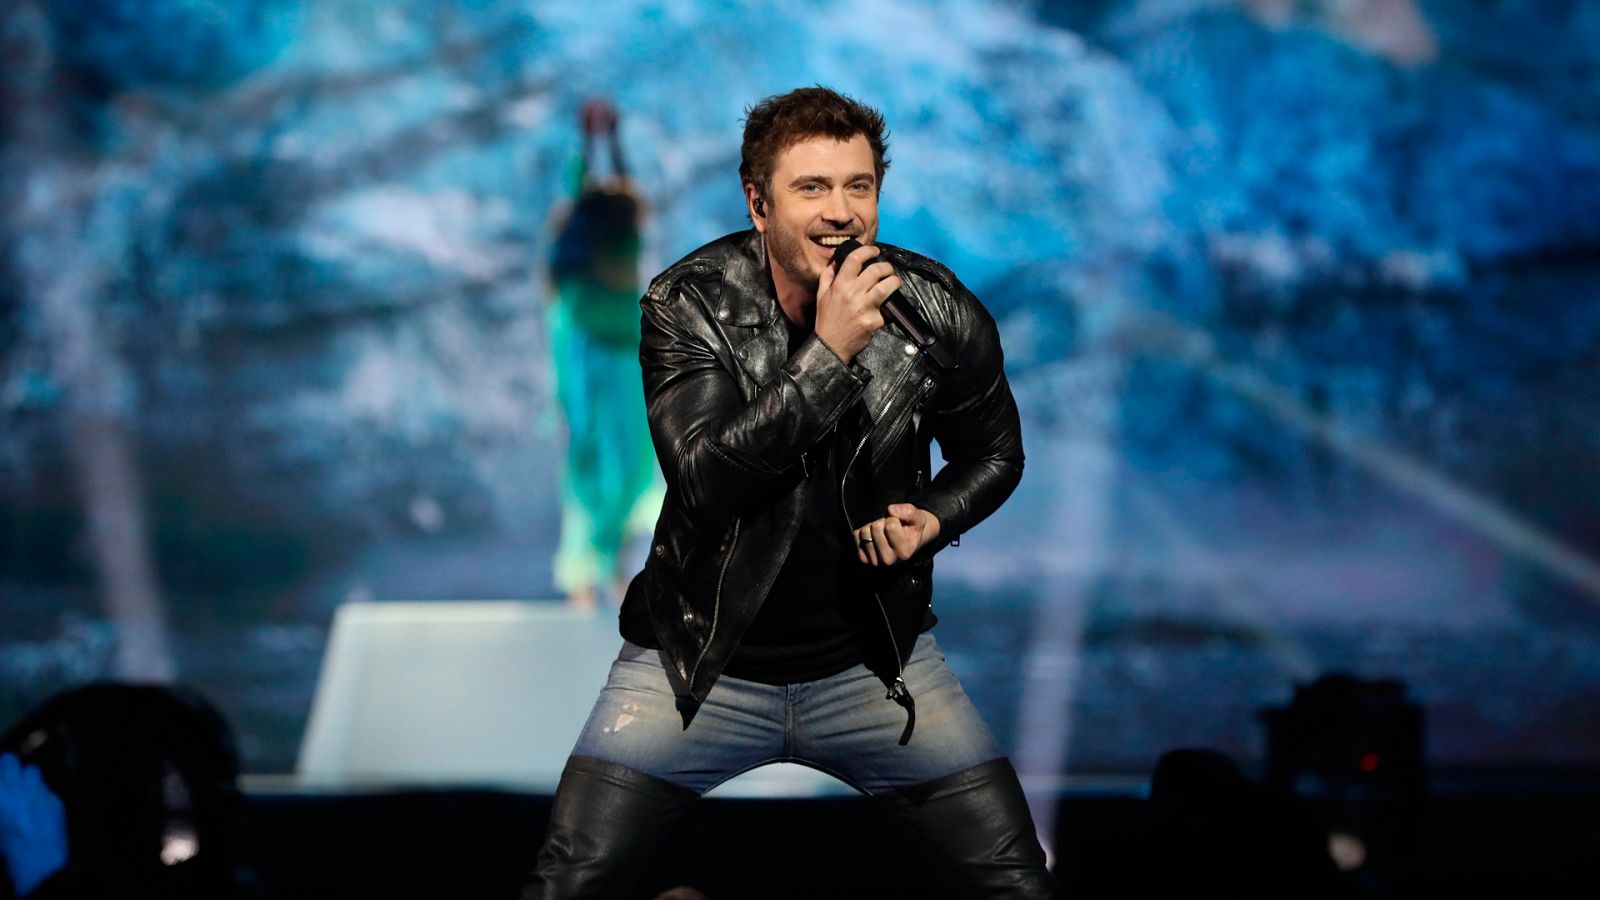 Eurovisión 2019 - Finlandia: Darude feat. Sebastian Rejman canta "Look away" en la primera semifinal